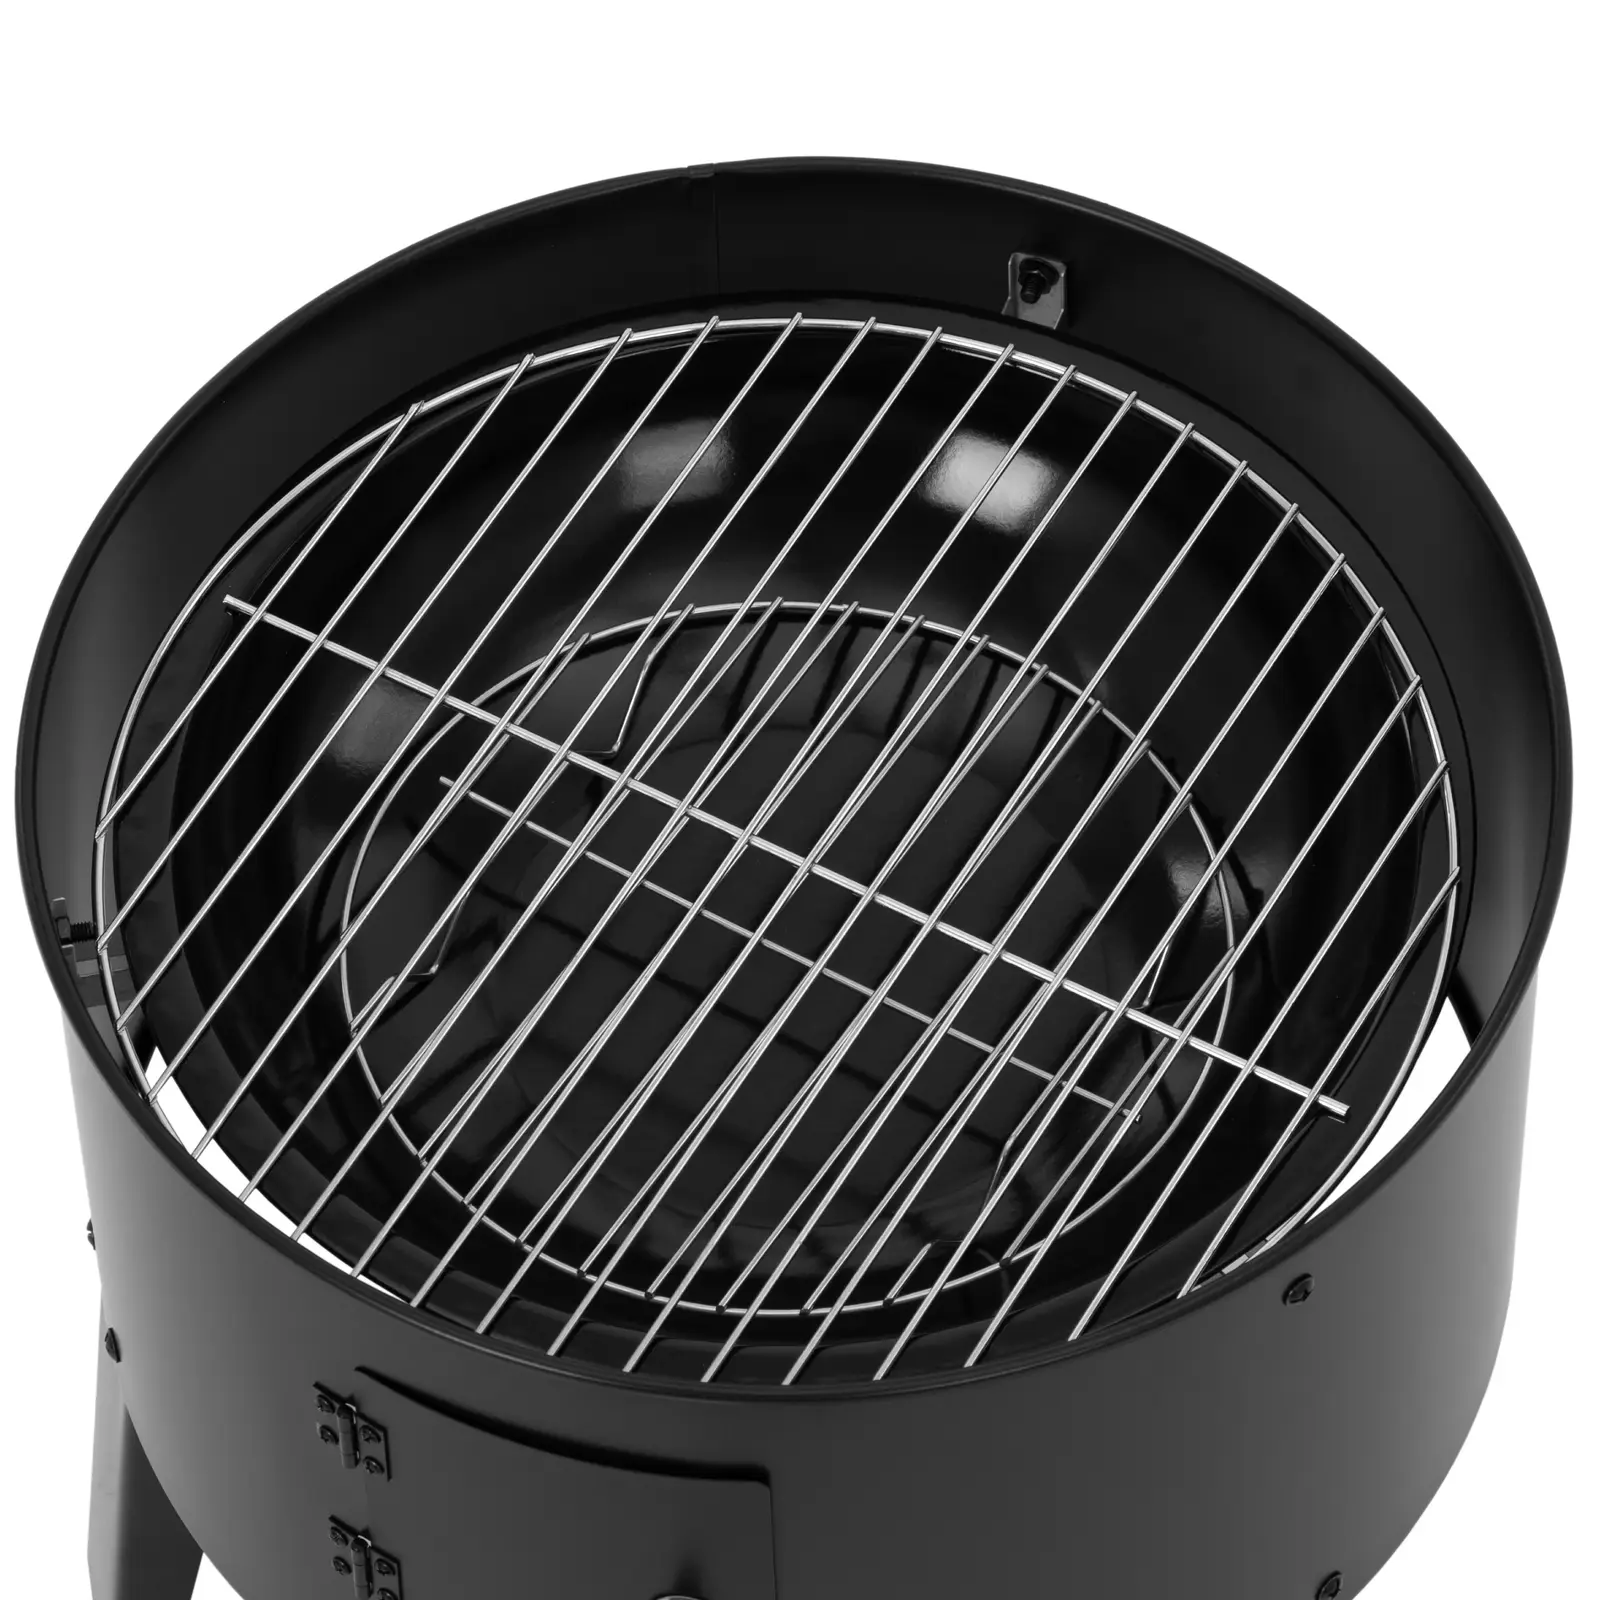 Füstölő grill - 3 fokozat - hőmérséklet-kijelző